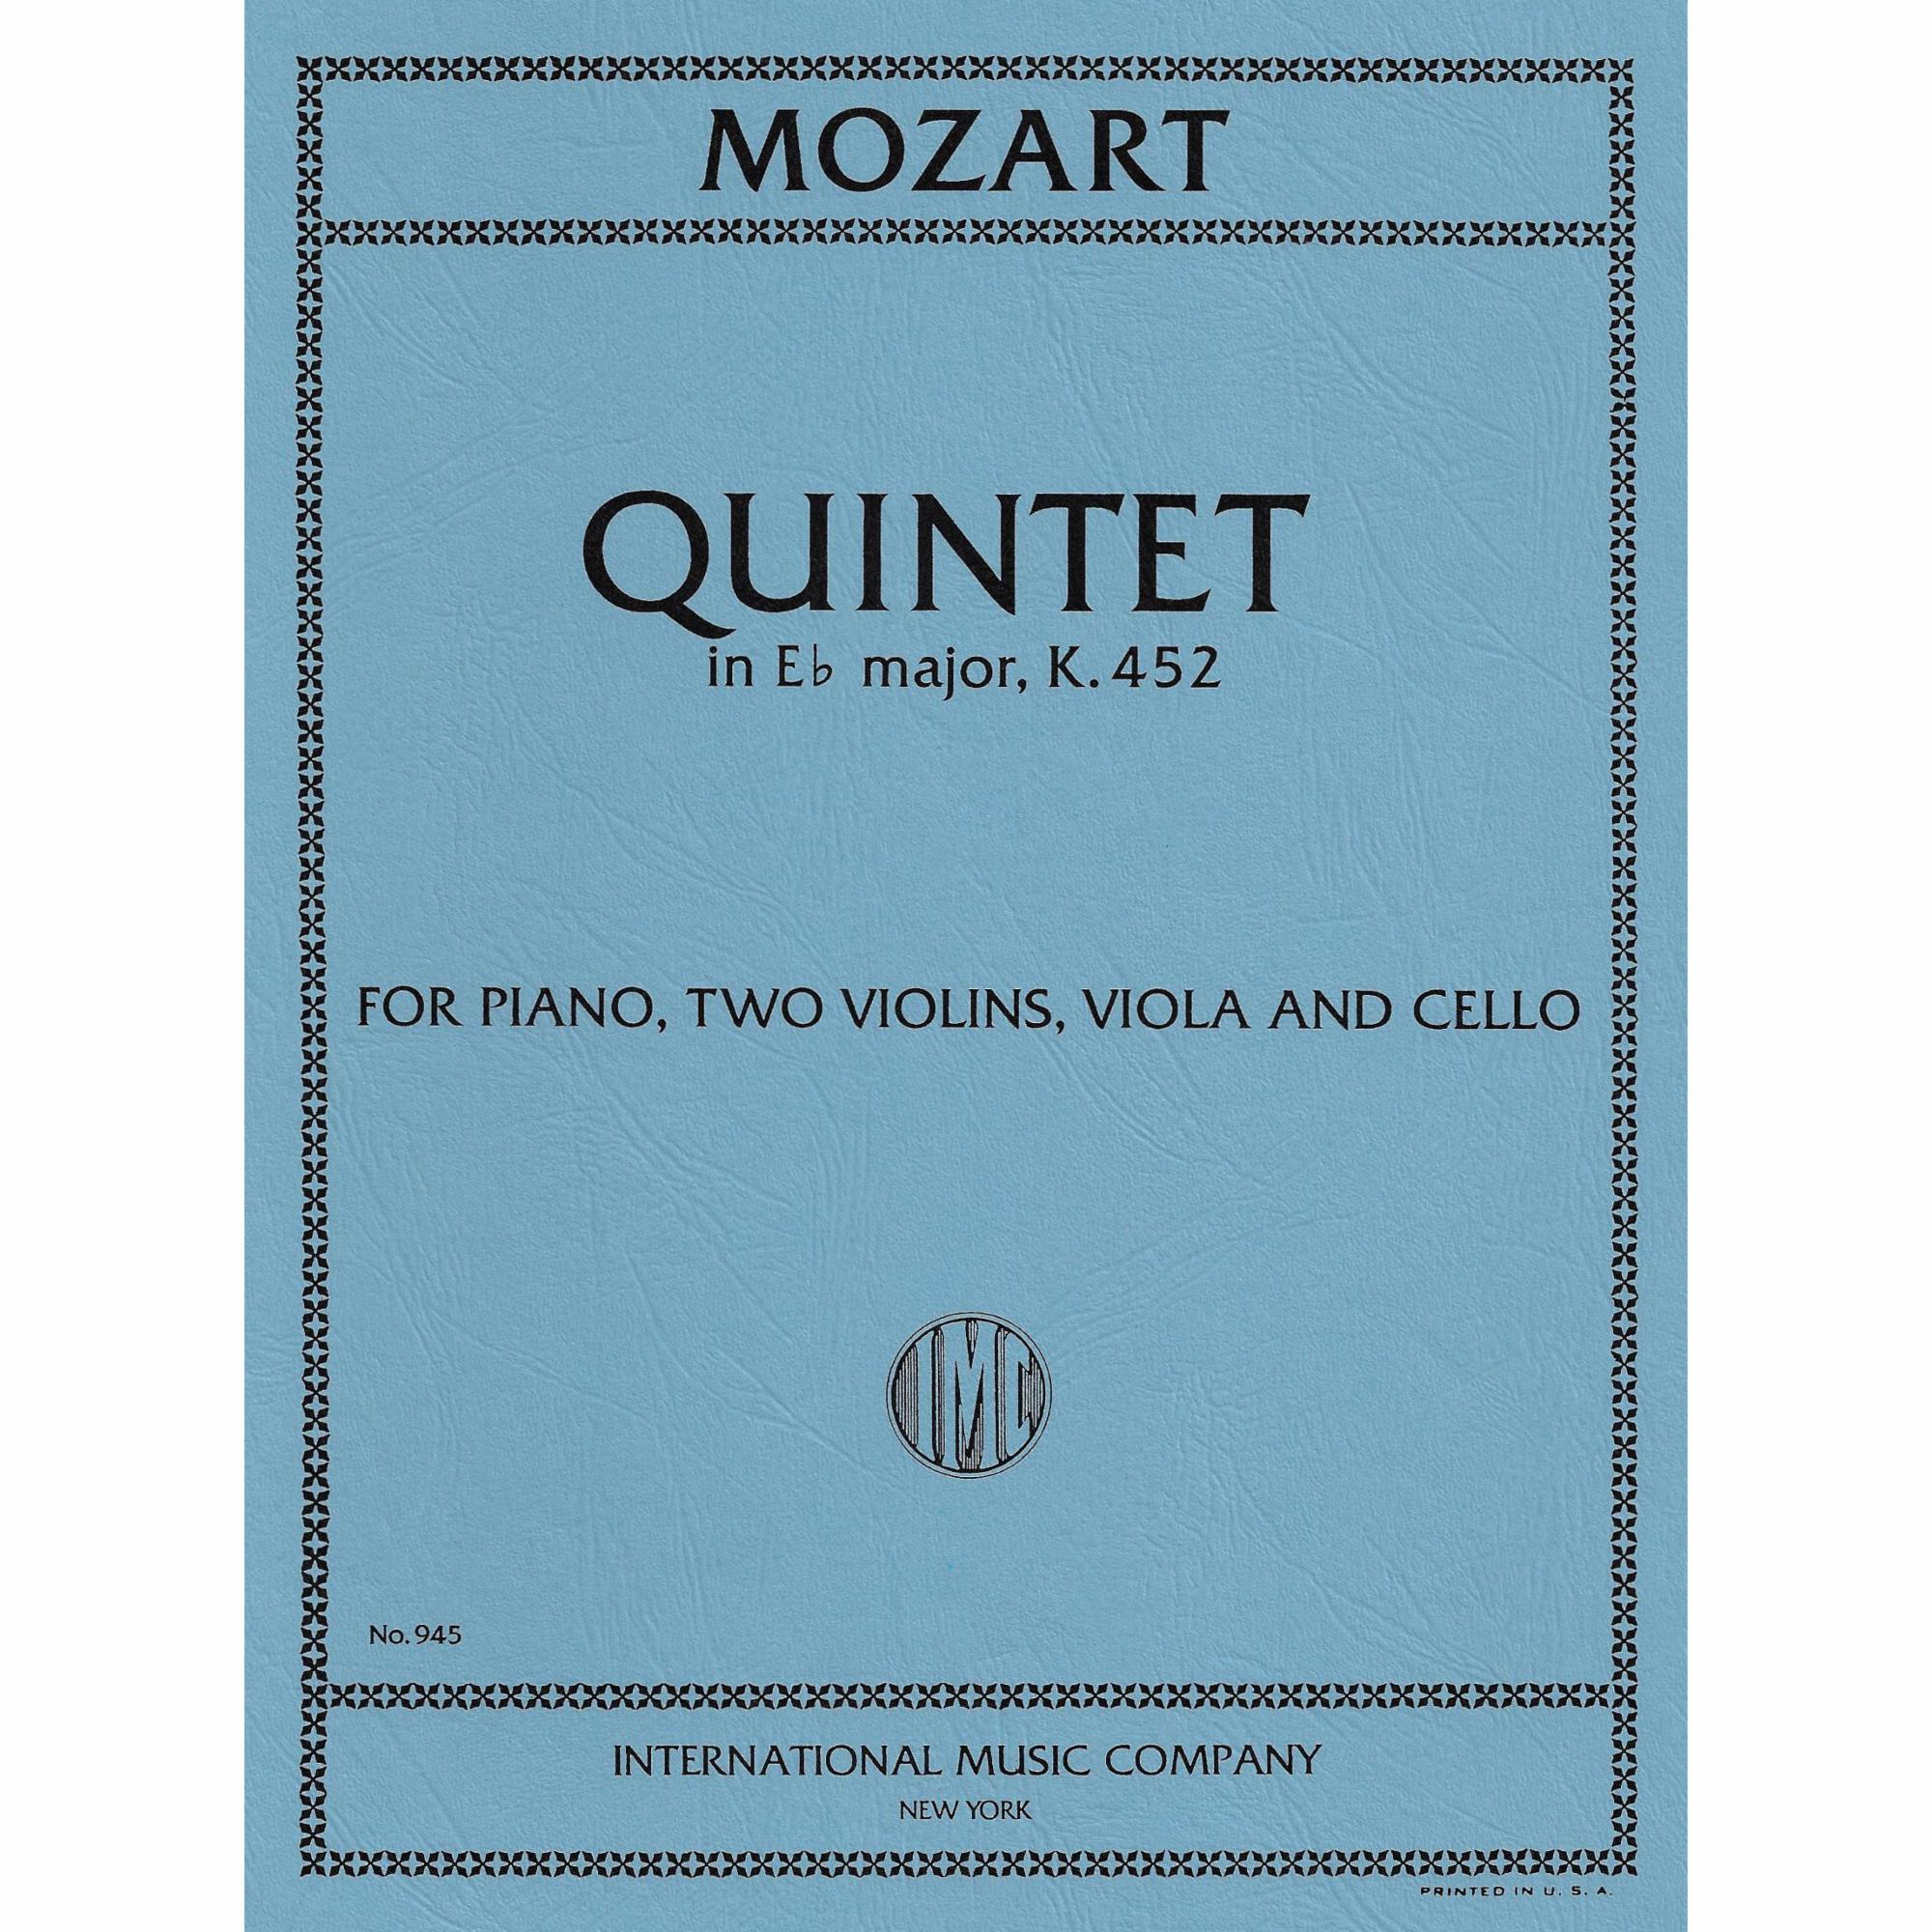 Mozart -- Piano Quintet in E-flat Major, K. 452